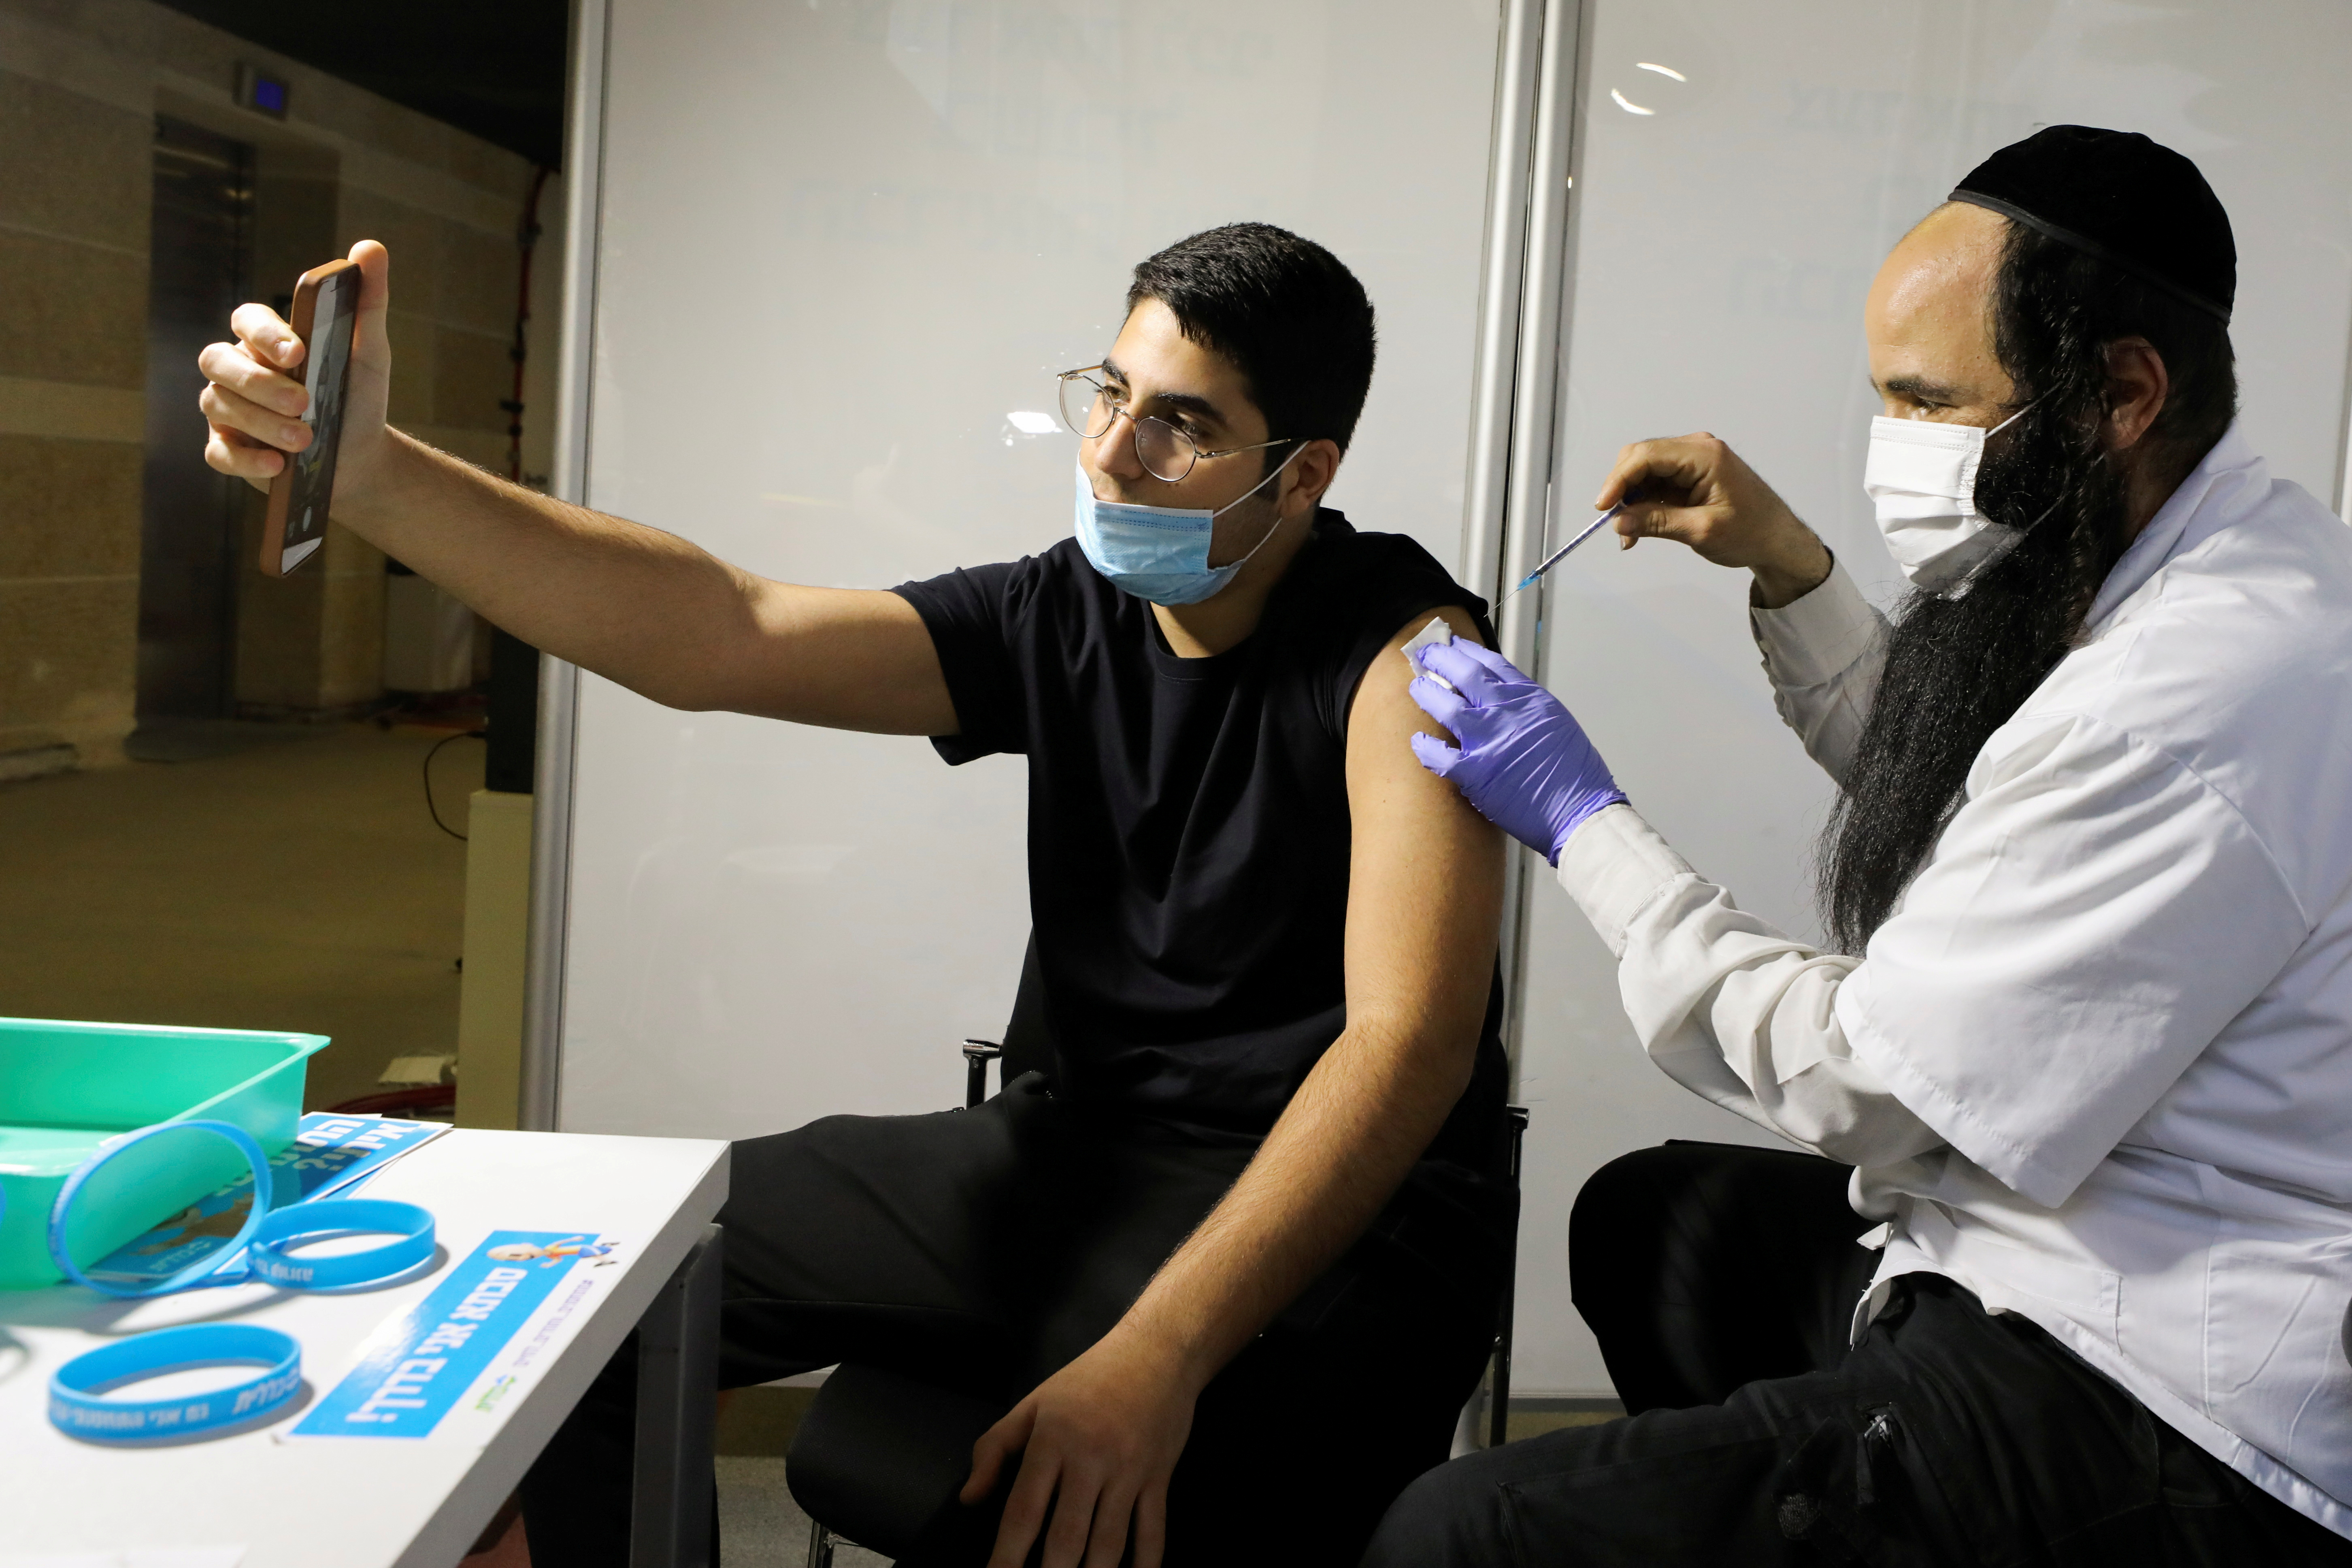 FOTO DE ARCHIVO: Un hombre recibe una vacuna contra la enfermedad del coronavirus (COVID-19) en un centro de vacunación temporal de la Organización de mantenimiento de la salud (HMO) Clalit, en un estadio deportivo en Jerusalén el 25 de febrero de 2021. Fotografía tomada el 25 de febrero de 2021. REUTERS / Ammar Awad 